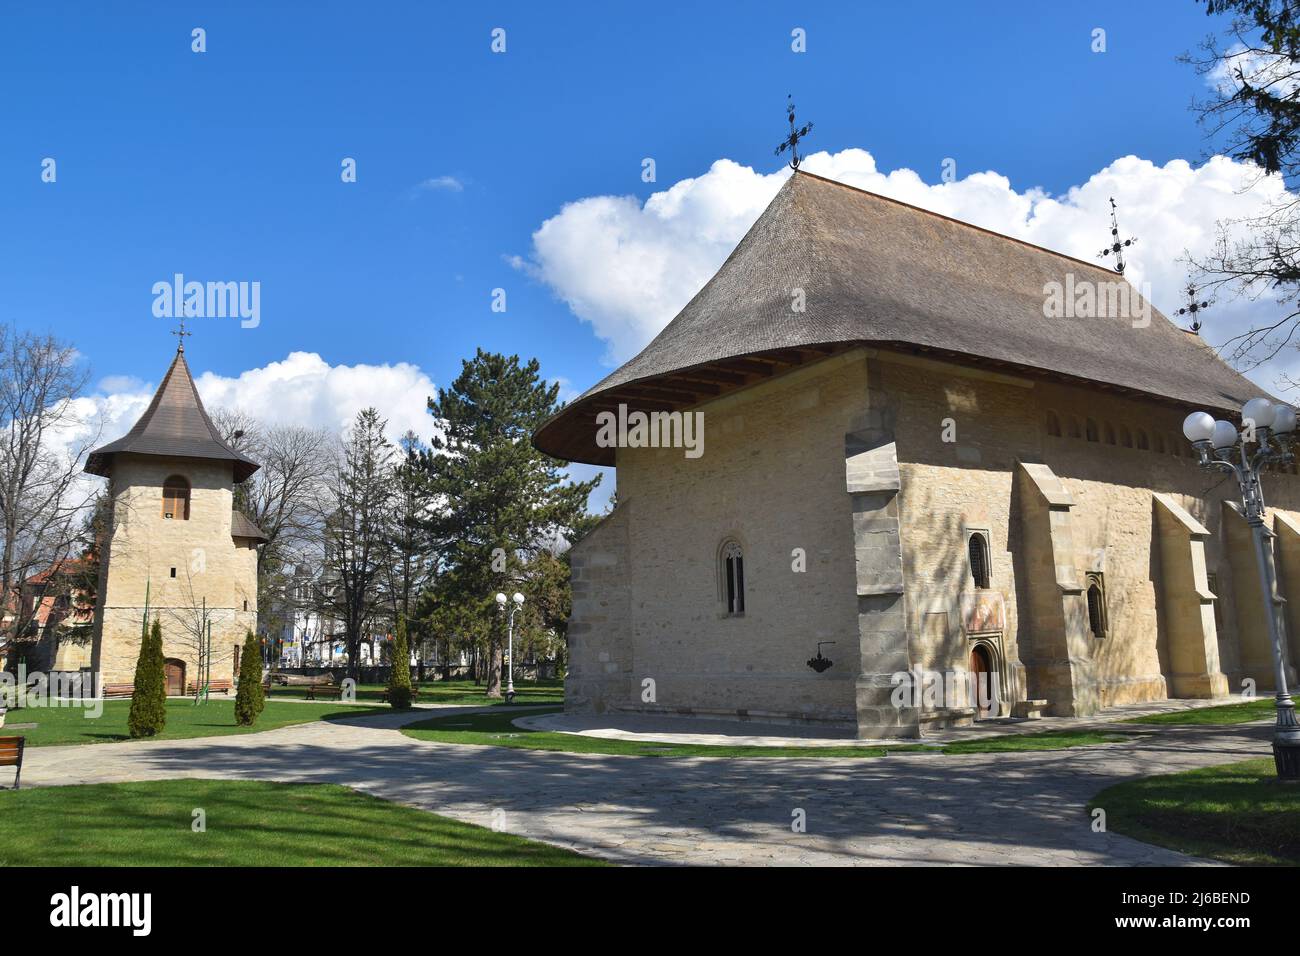 Rădăuți (Radauti) in the Region of Bucovina, Northern Romania: The Bogdana Monastery Stock Photo